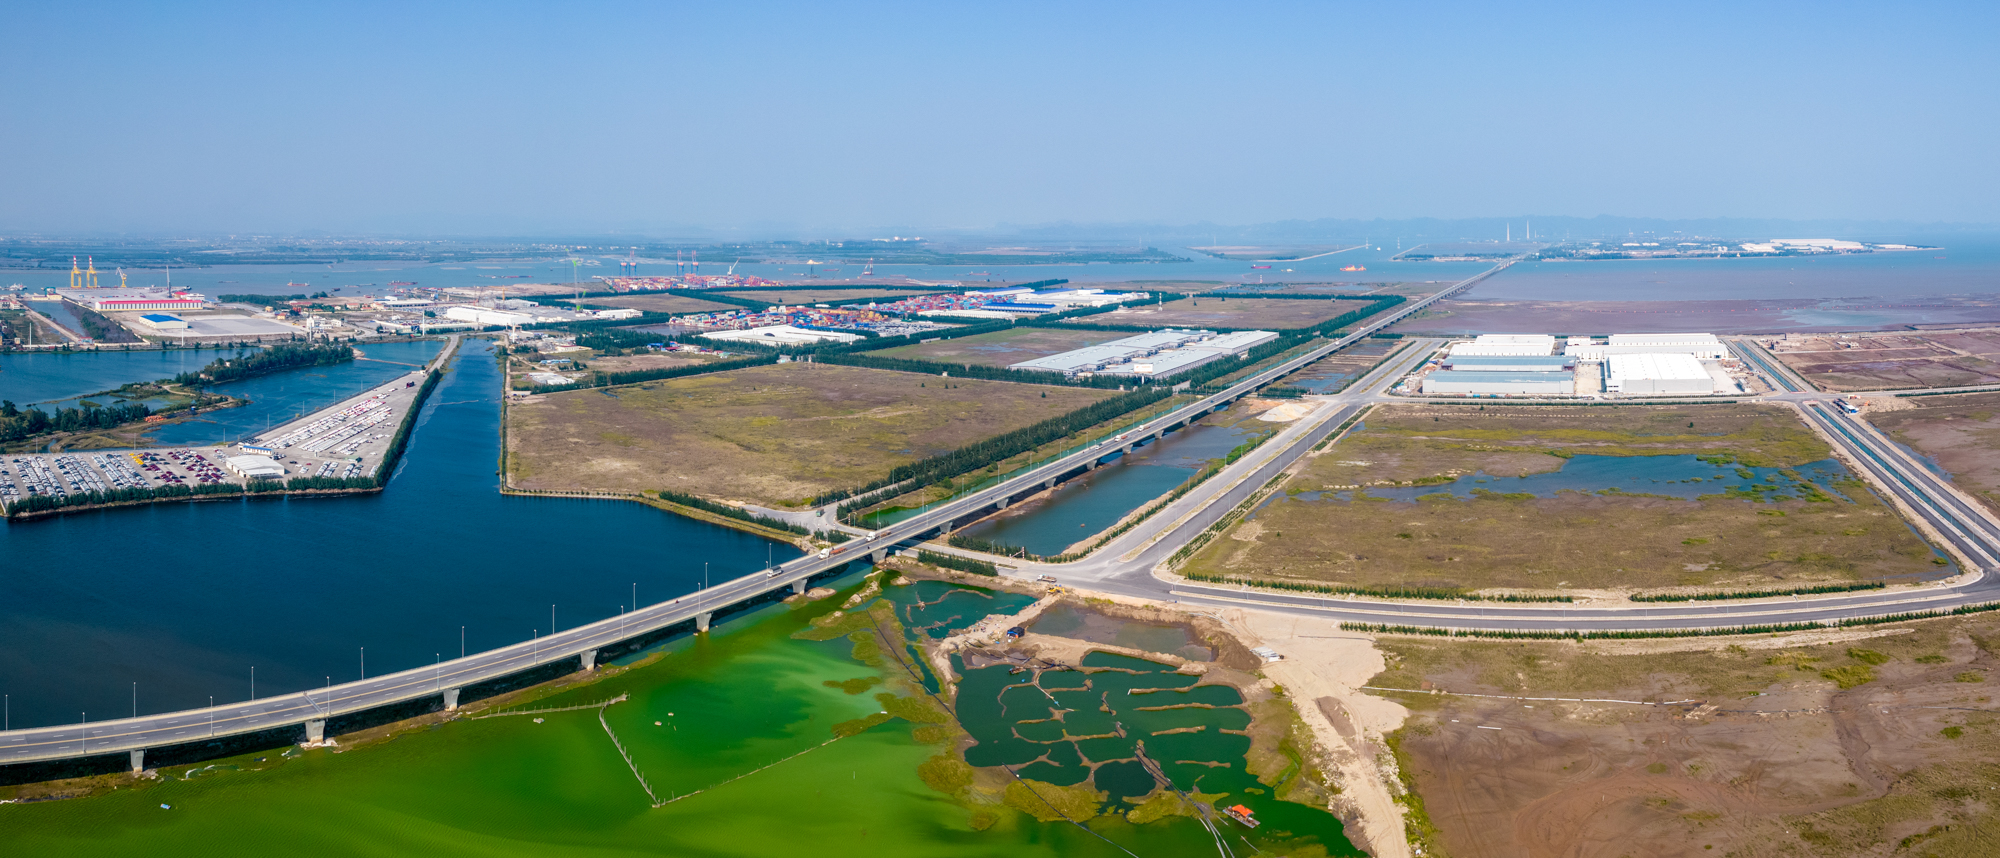 Kỷ lục Hải Phòng: Cầu vượt biển dài nhất Việt Nam, trụ cáp treo cao nhất thế giới - Ảnh 8.